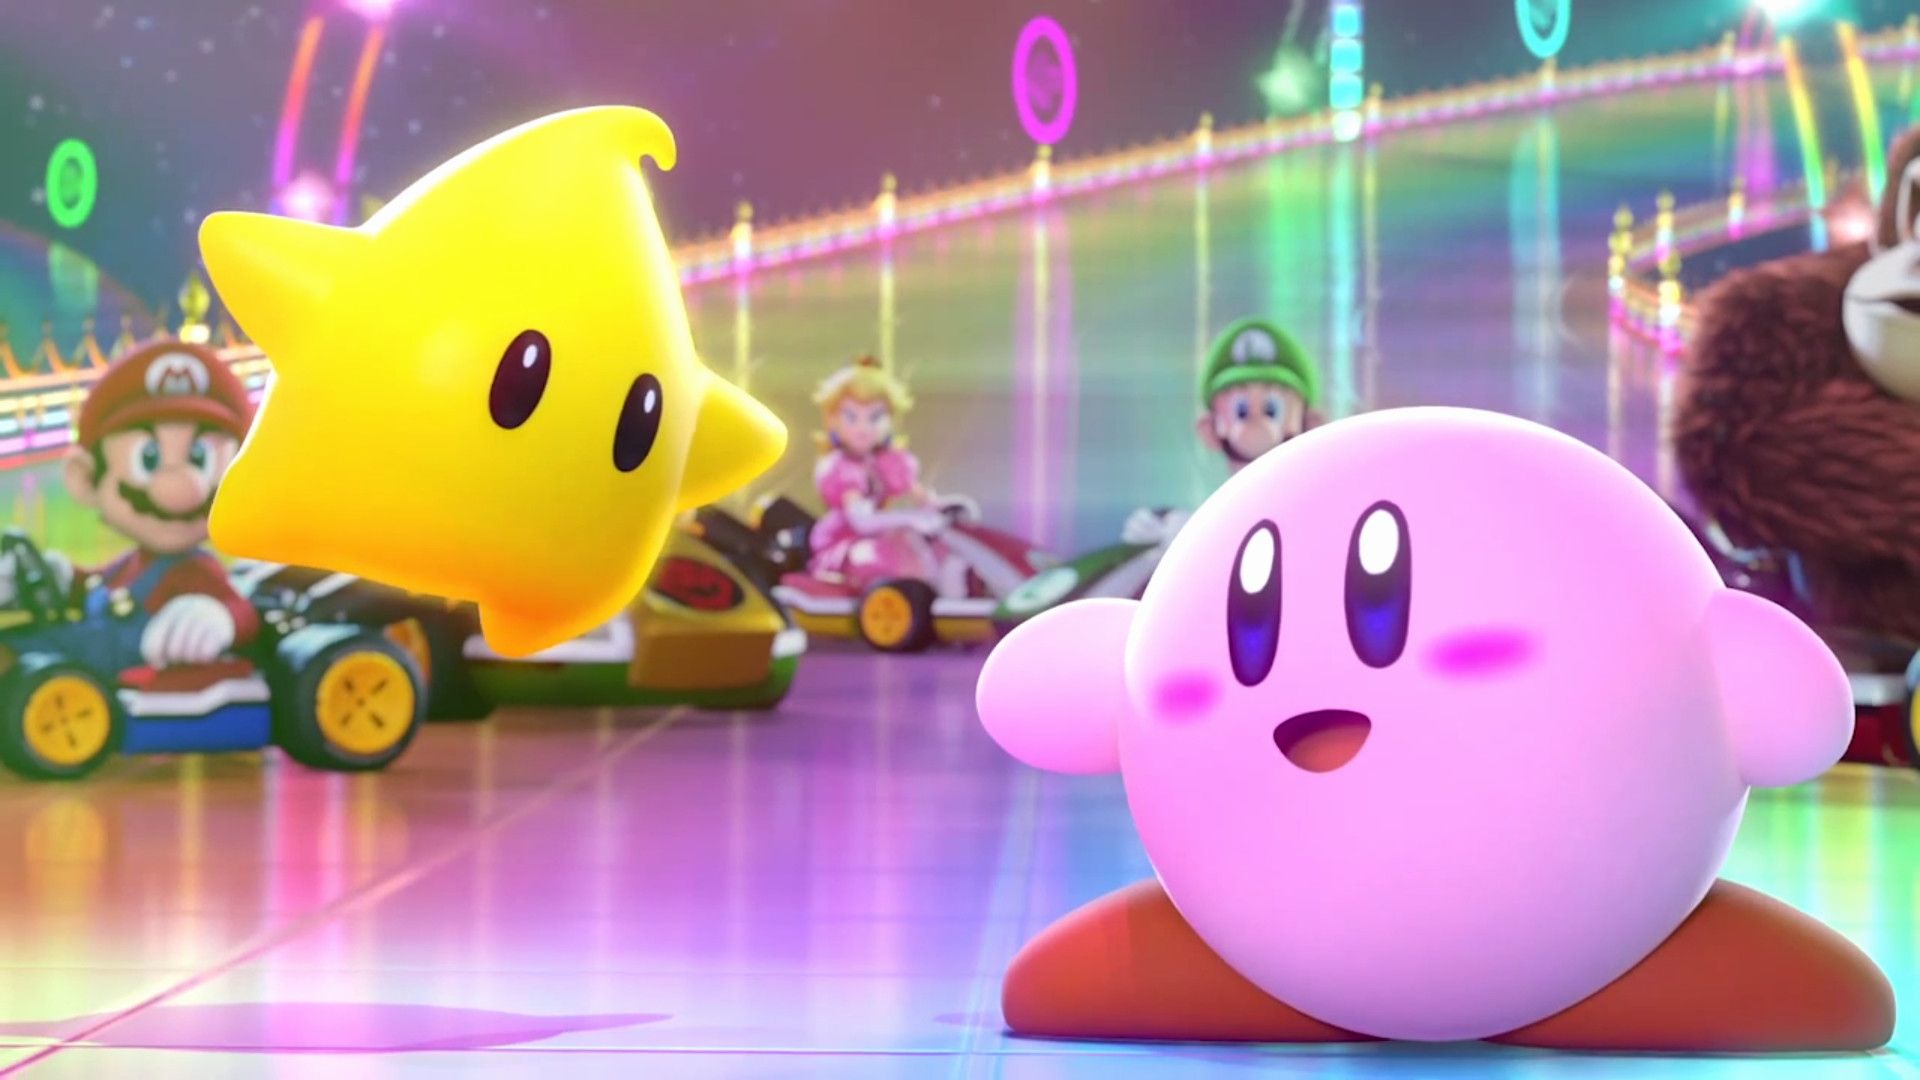 Bạn đang muốn có một hình nền Kirby chất lượng cao cho thiết bị của mình? Hãy tham khảo ngay những hình nền Kirby chất lượng cao miễn phí để đạt được mục tiêu này. Chắc chắn bạn sẽ thích thú với những hình ảnh sáng tạo và độc đáo nhất!